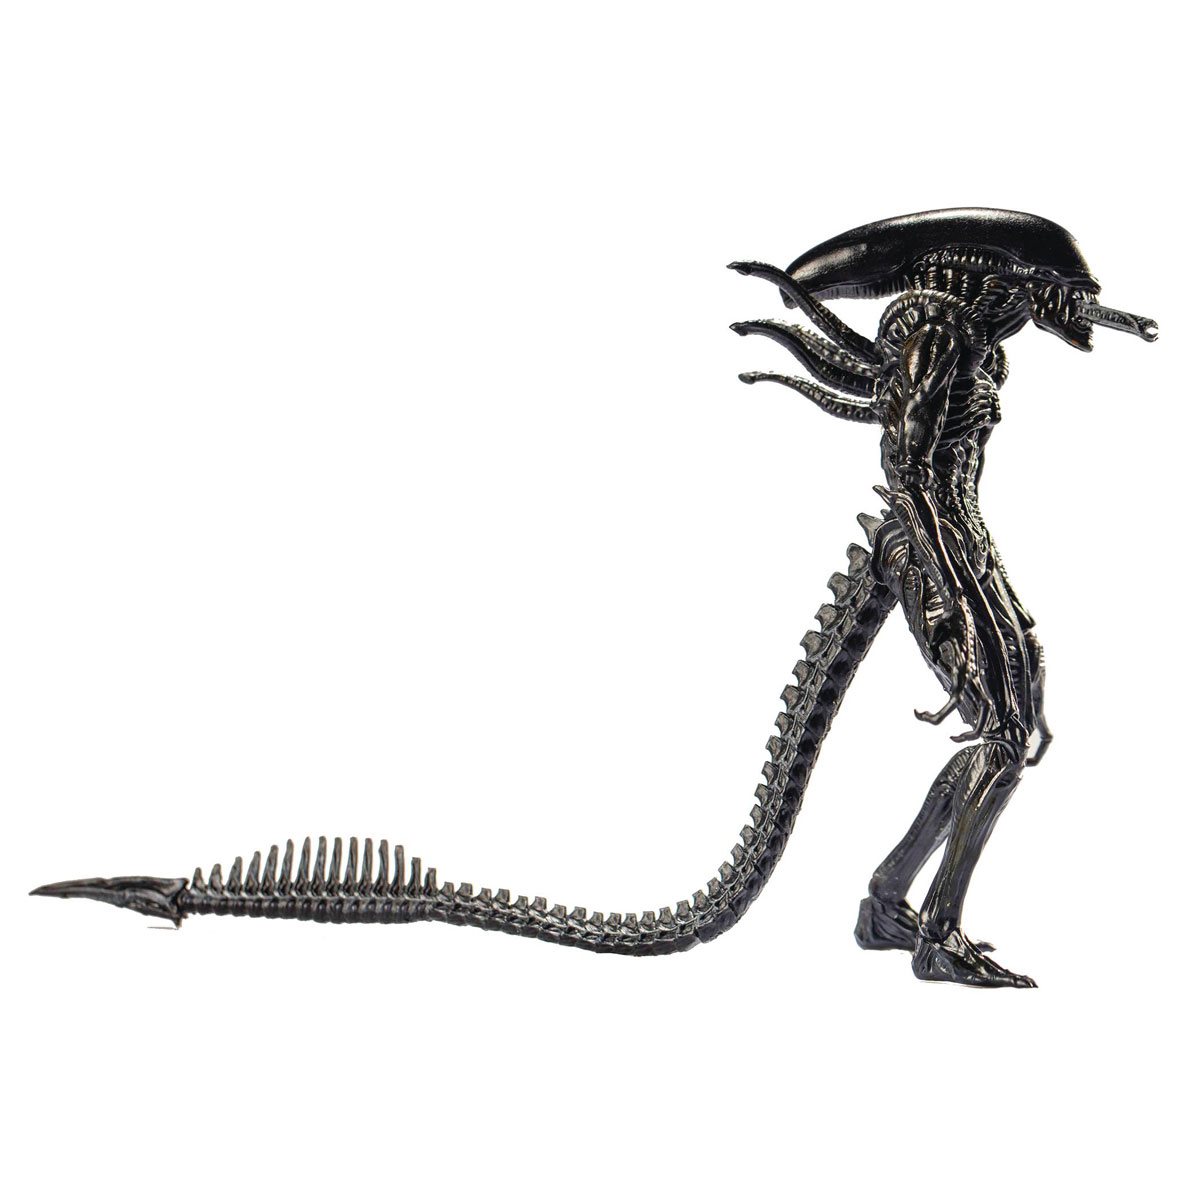 avp-alien-vs-predator-alien-warrior-1-18-scale-action-figure-previews-exclusive